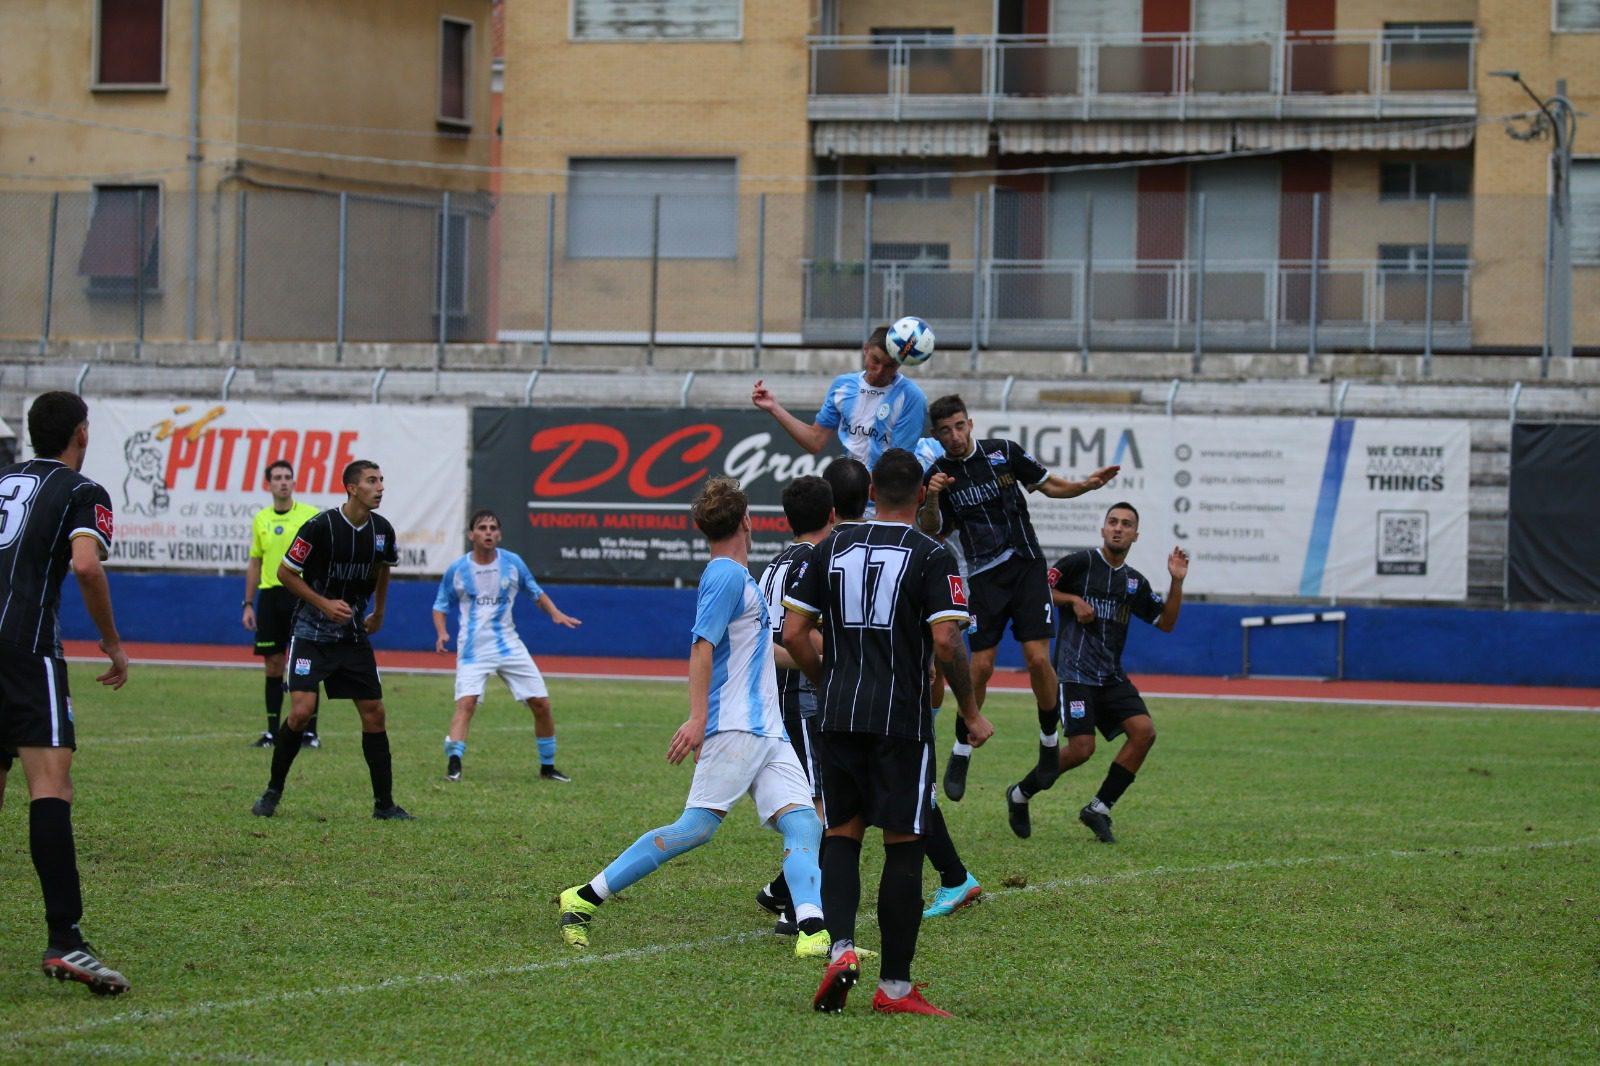 Buona la prima del Fbc Saronno in Coppa Italia: cronaca, tabellino e fotogallery